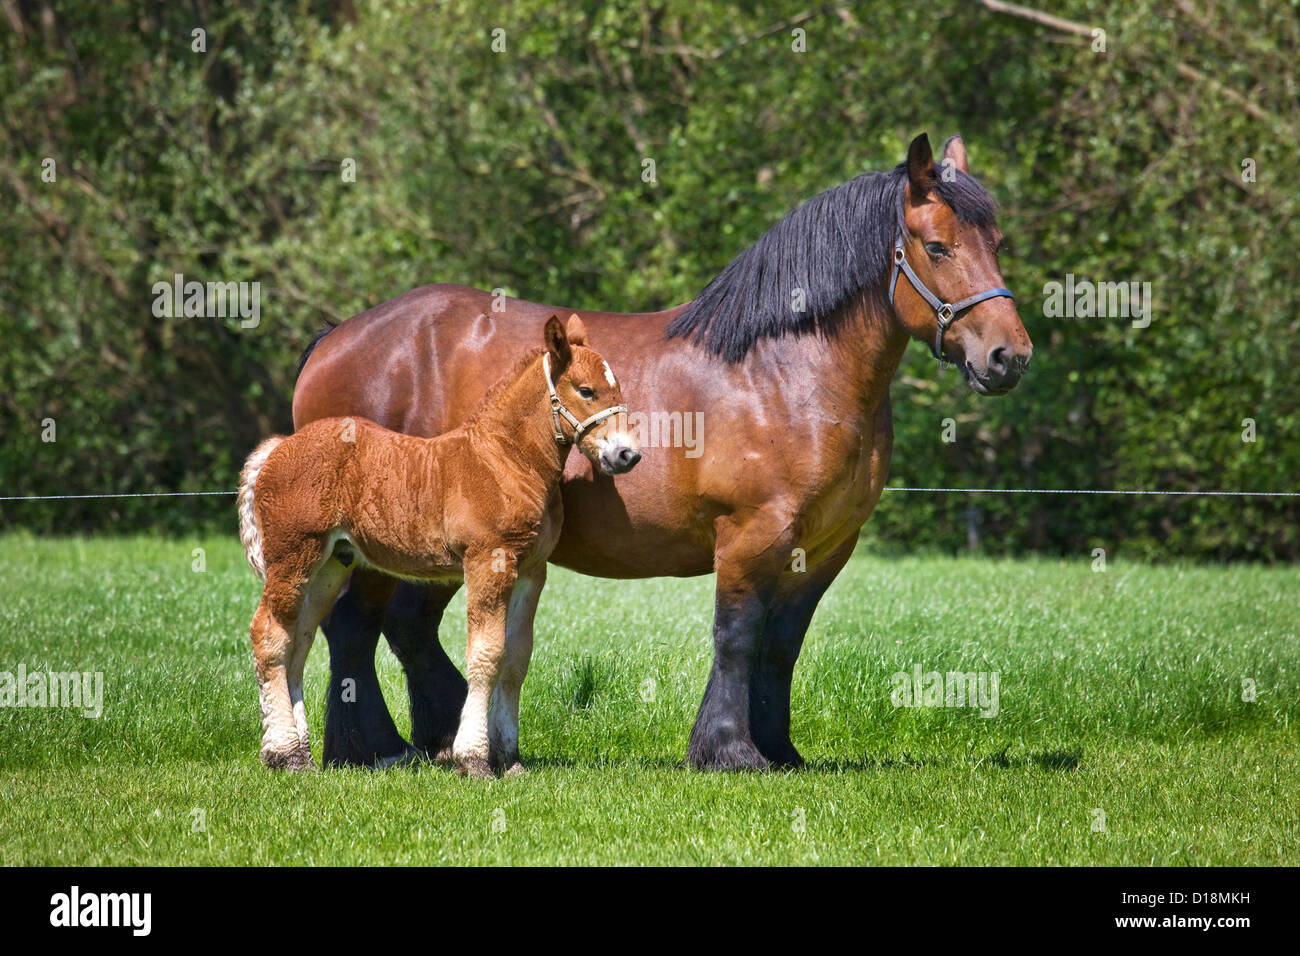 Poulain et la jument Cheval de Trait Belge / Belgian Heavy Horse / Brabançon / Brabant, chevaux de race en Belgique Banque D'Images